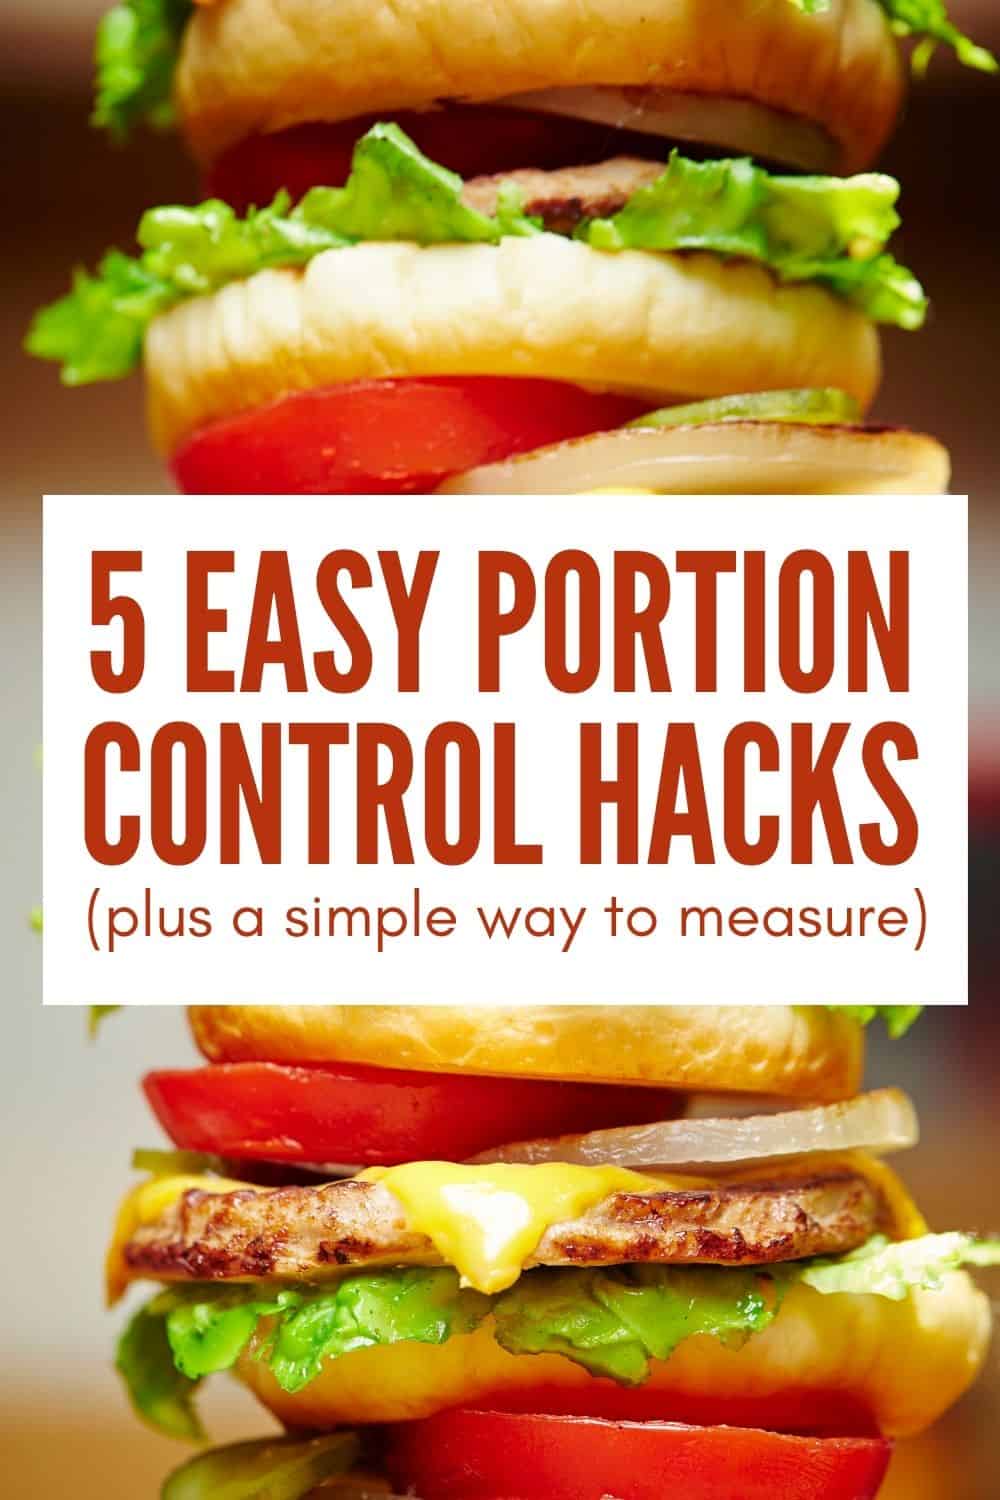 5 Easy Portion Control Hacks